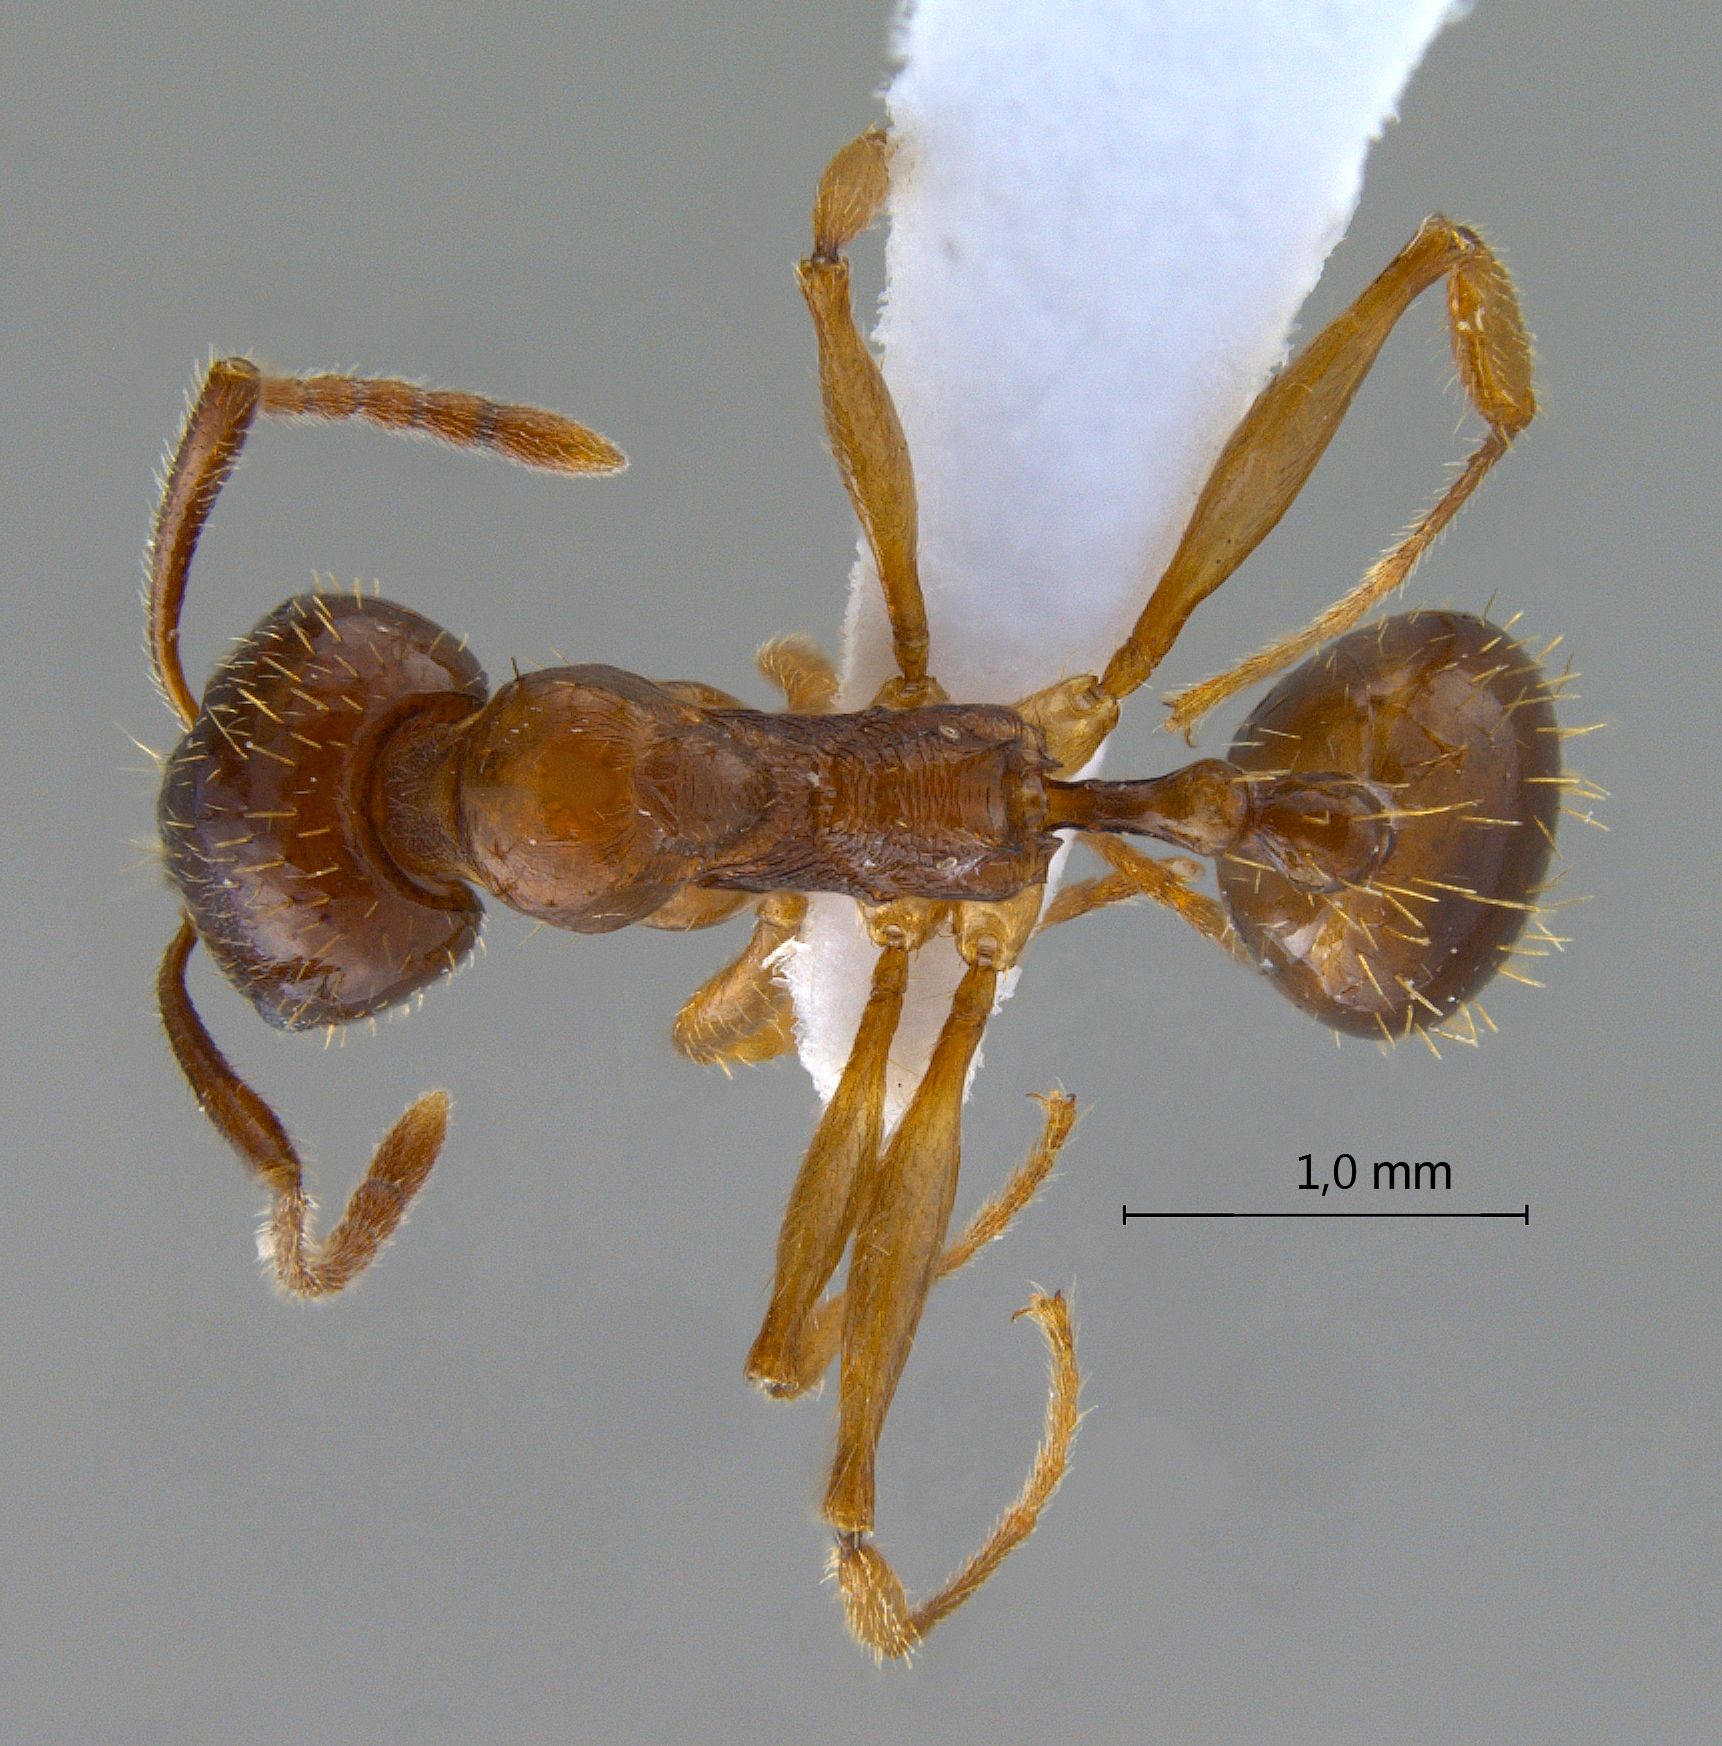 Foto Aphaenogaster subterranea Latreille, 1798 dorsal